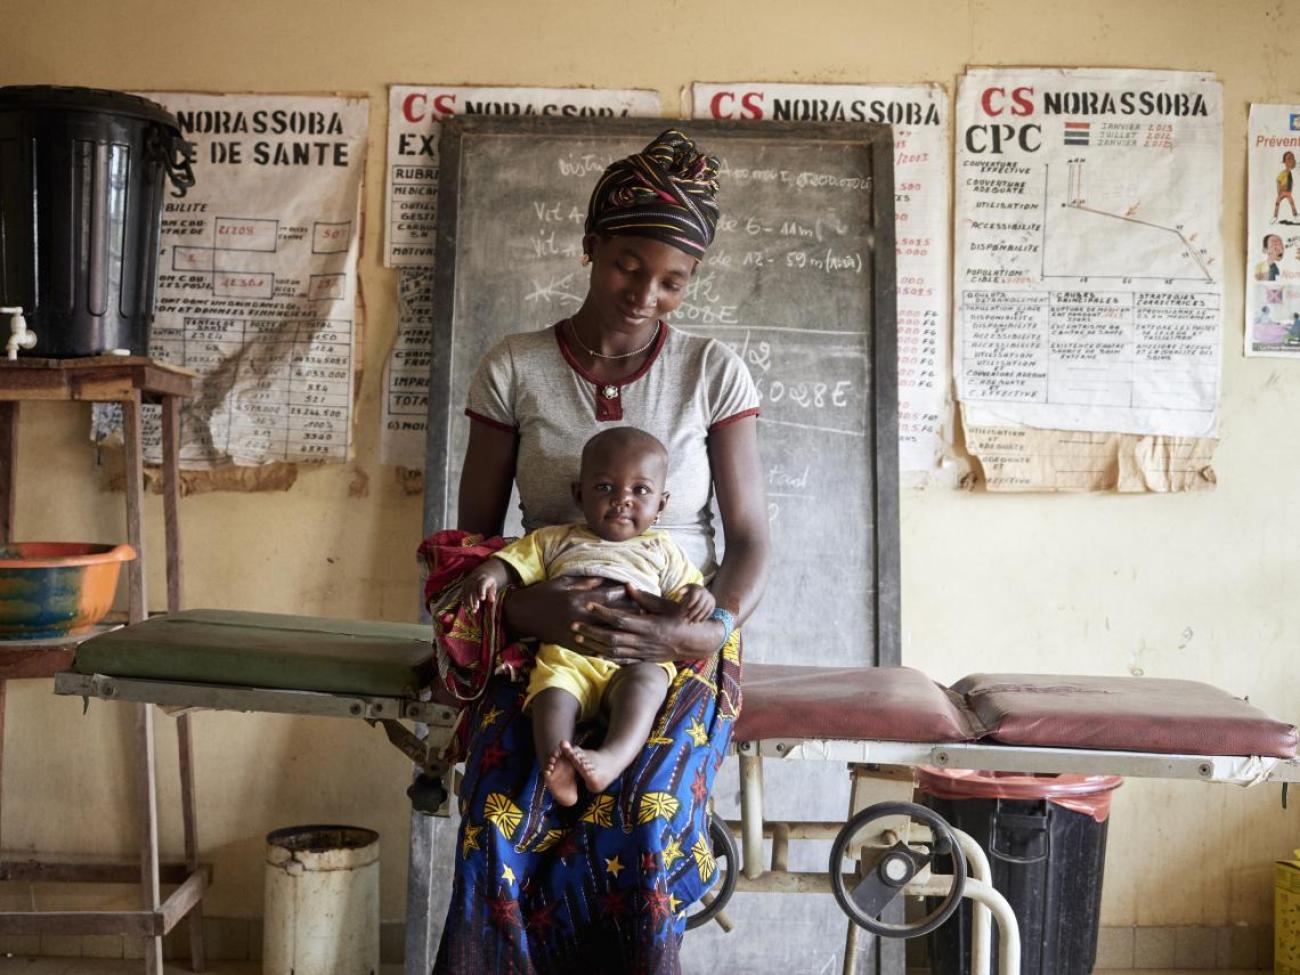 Centre de santé de Norassoba. Judicael Traore et sa fille Adama Traore 6 mois. Au centre de santé pour un mal de ventre du bébé